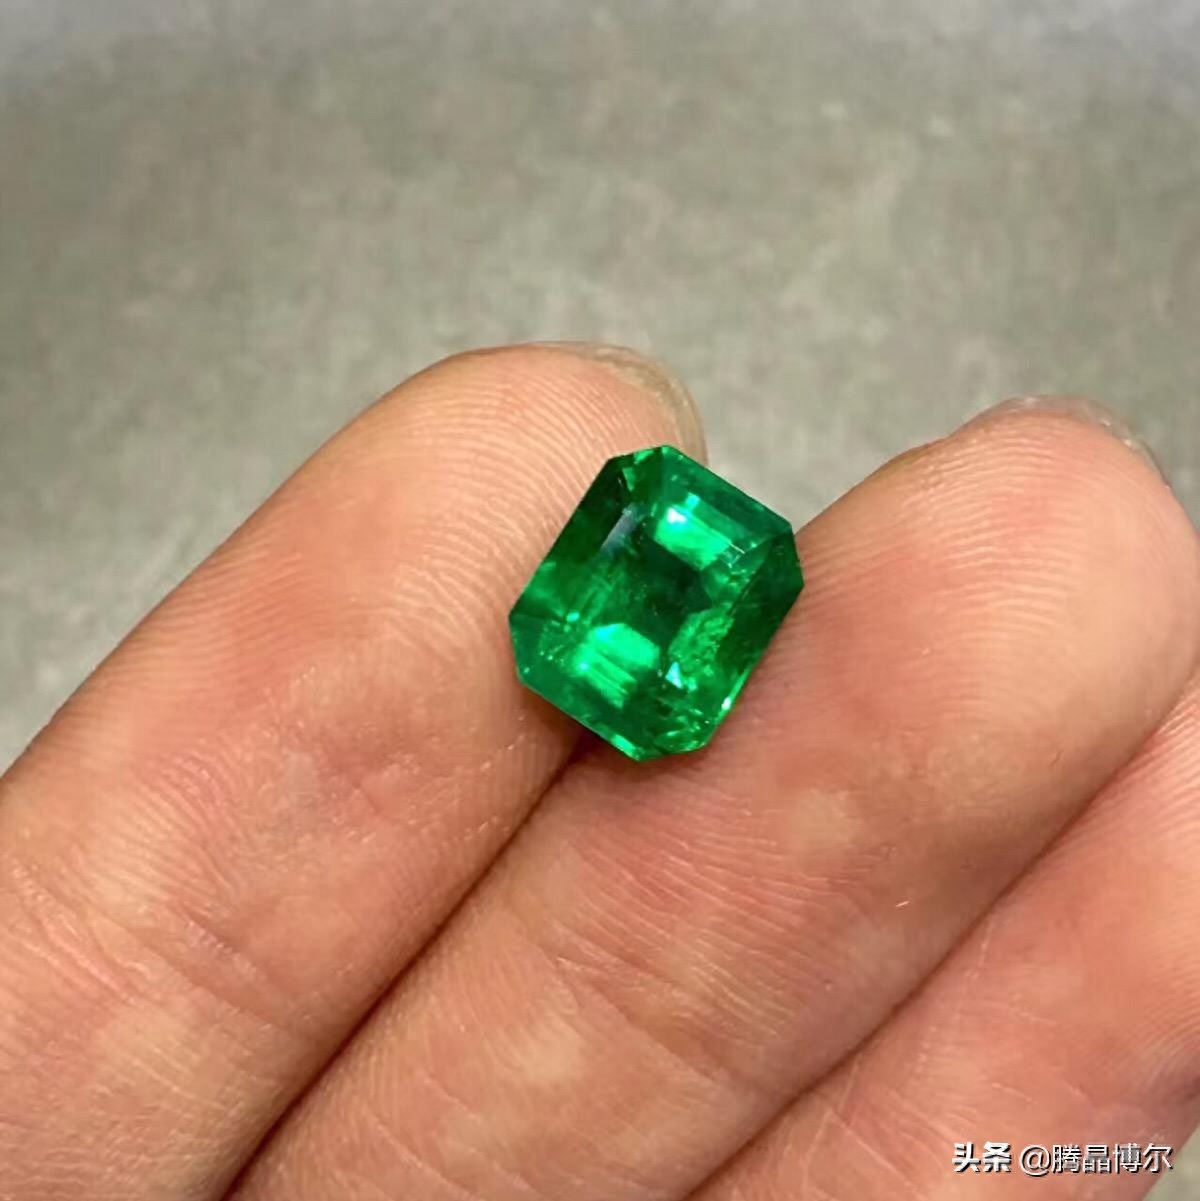 祖母绿是国际珠宝界公认的五大珍贵宝石之一、绿柱石类宝石家族中最珍贵的一员、绿色宝石之王。什么是祖母绿，对它不了解的人，可能会以为它是上了年纪的妇女才会戴的珠宝，是